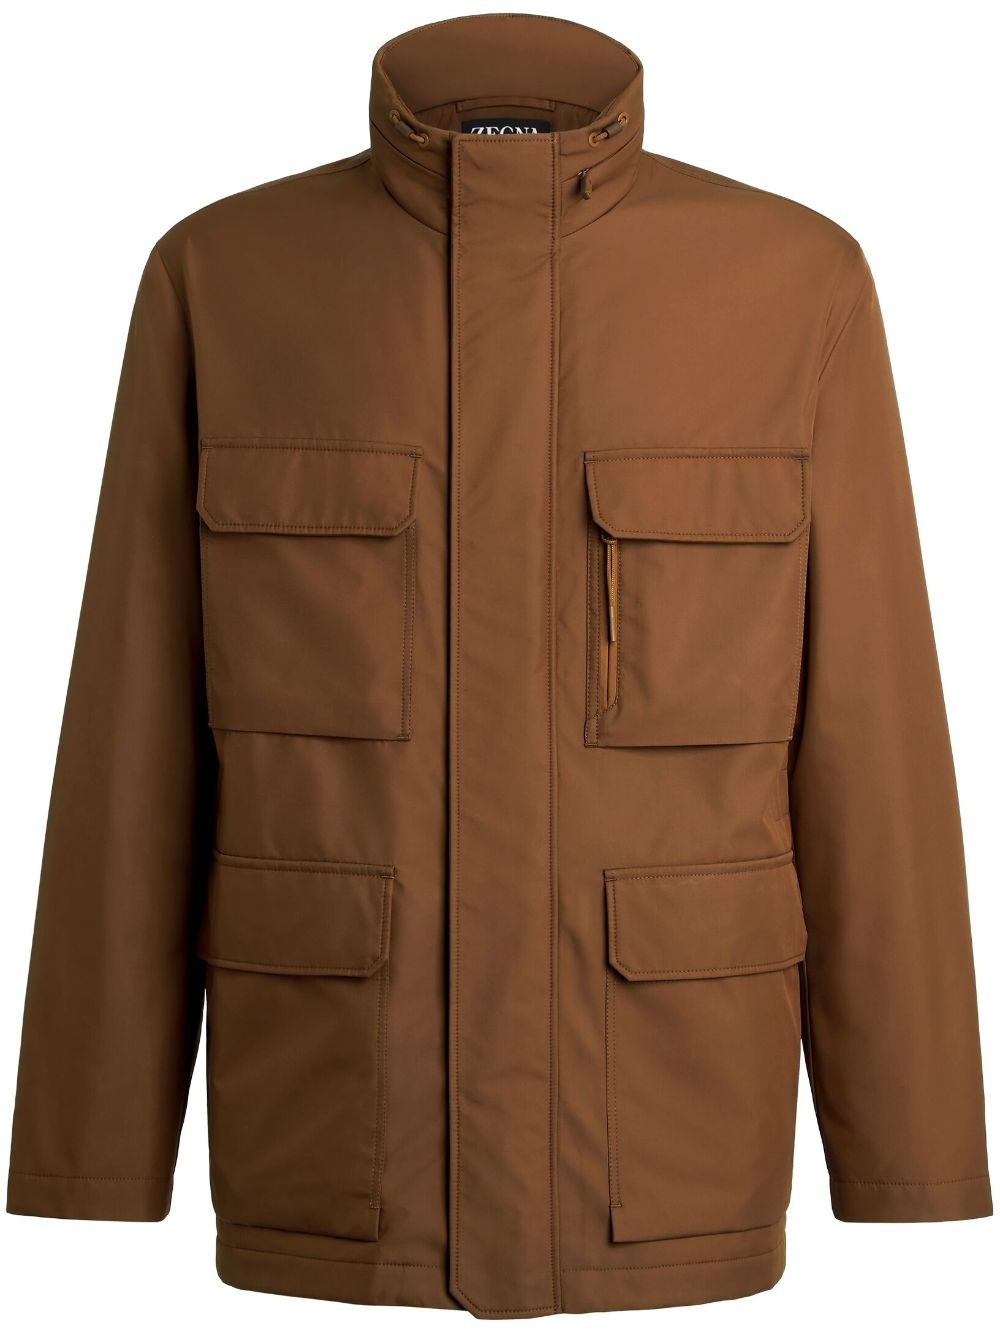 flap-pocket field jacket - 1